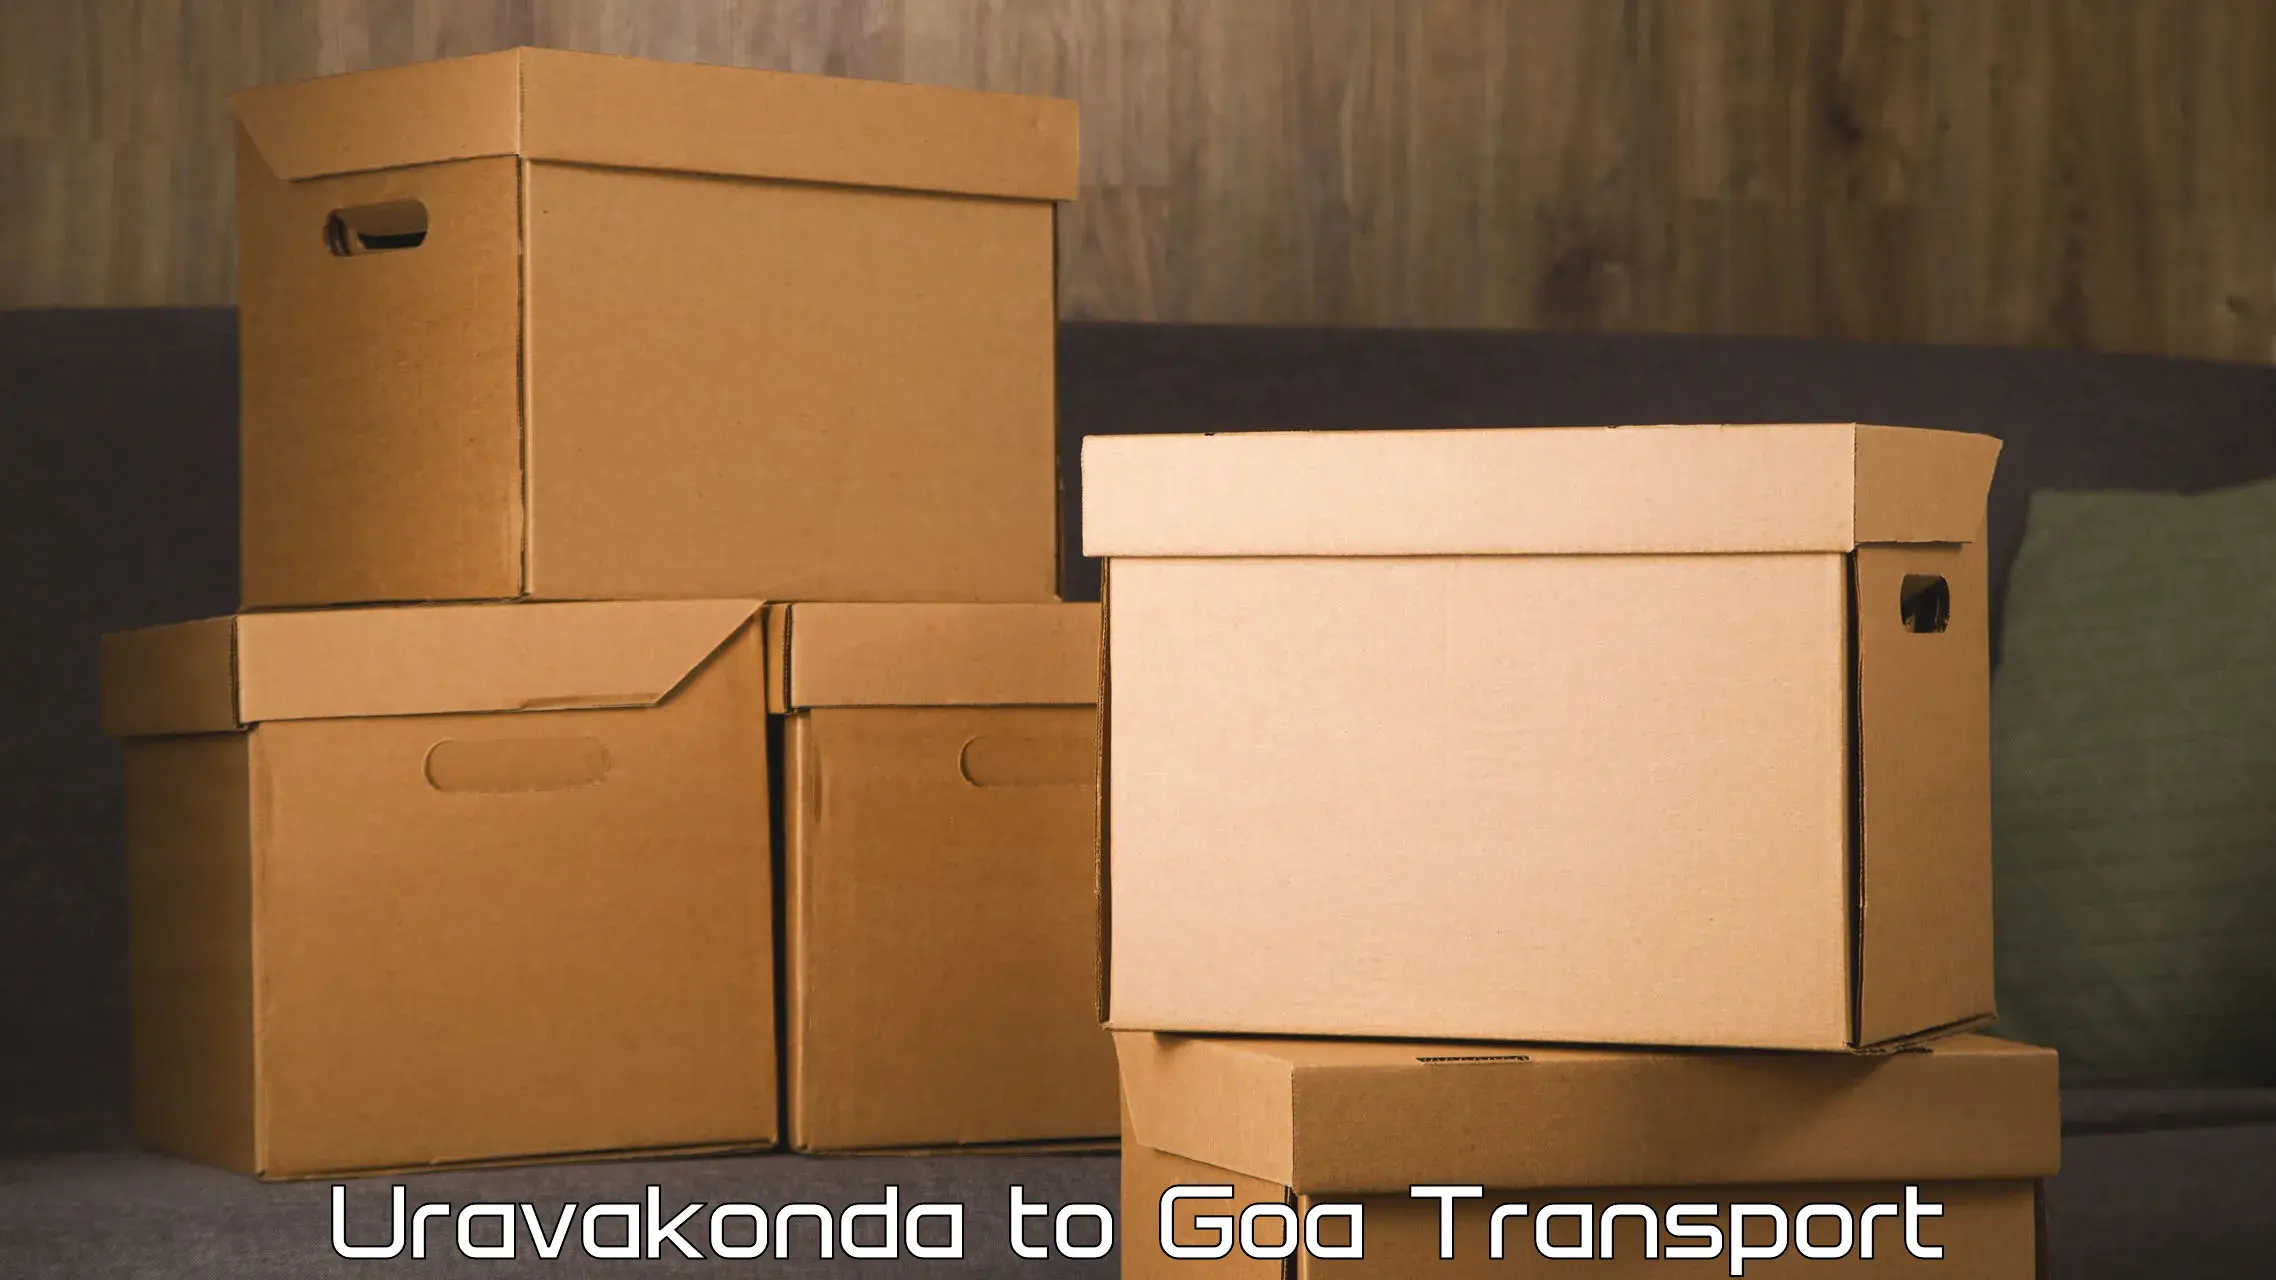 Furniture transport service Uravakonda to Bardez